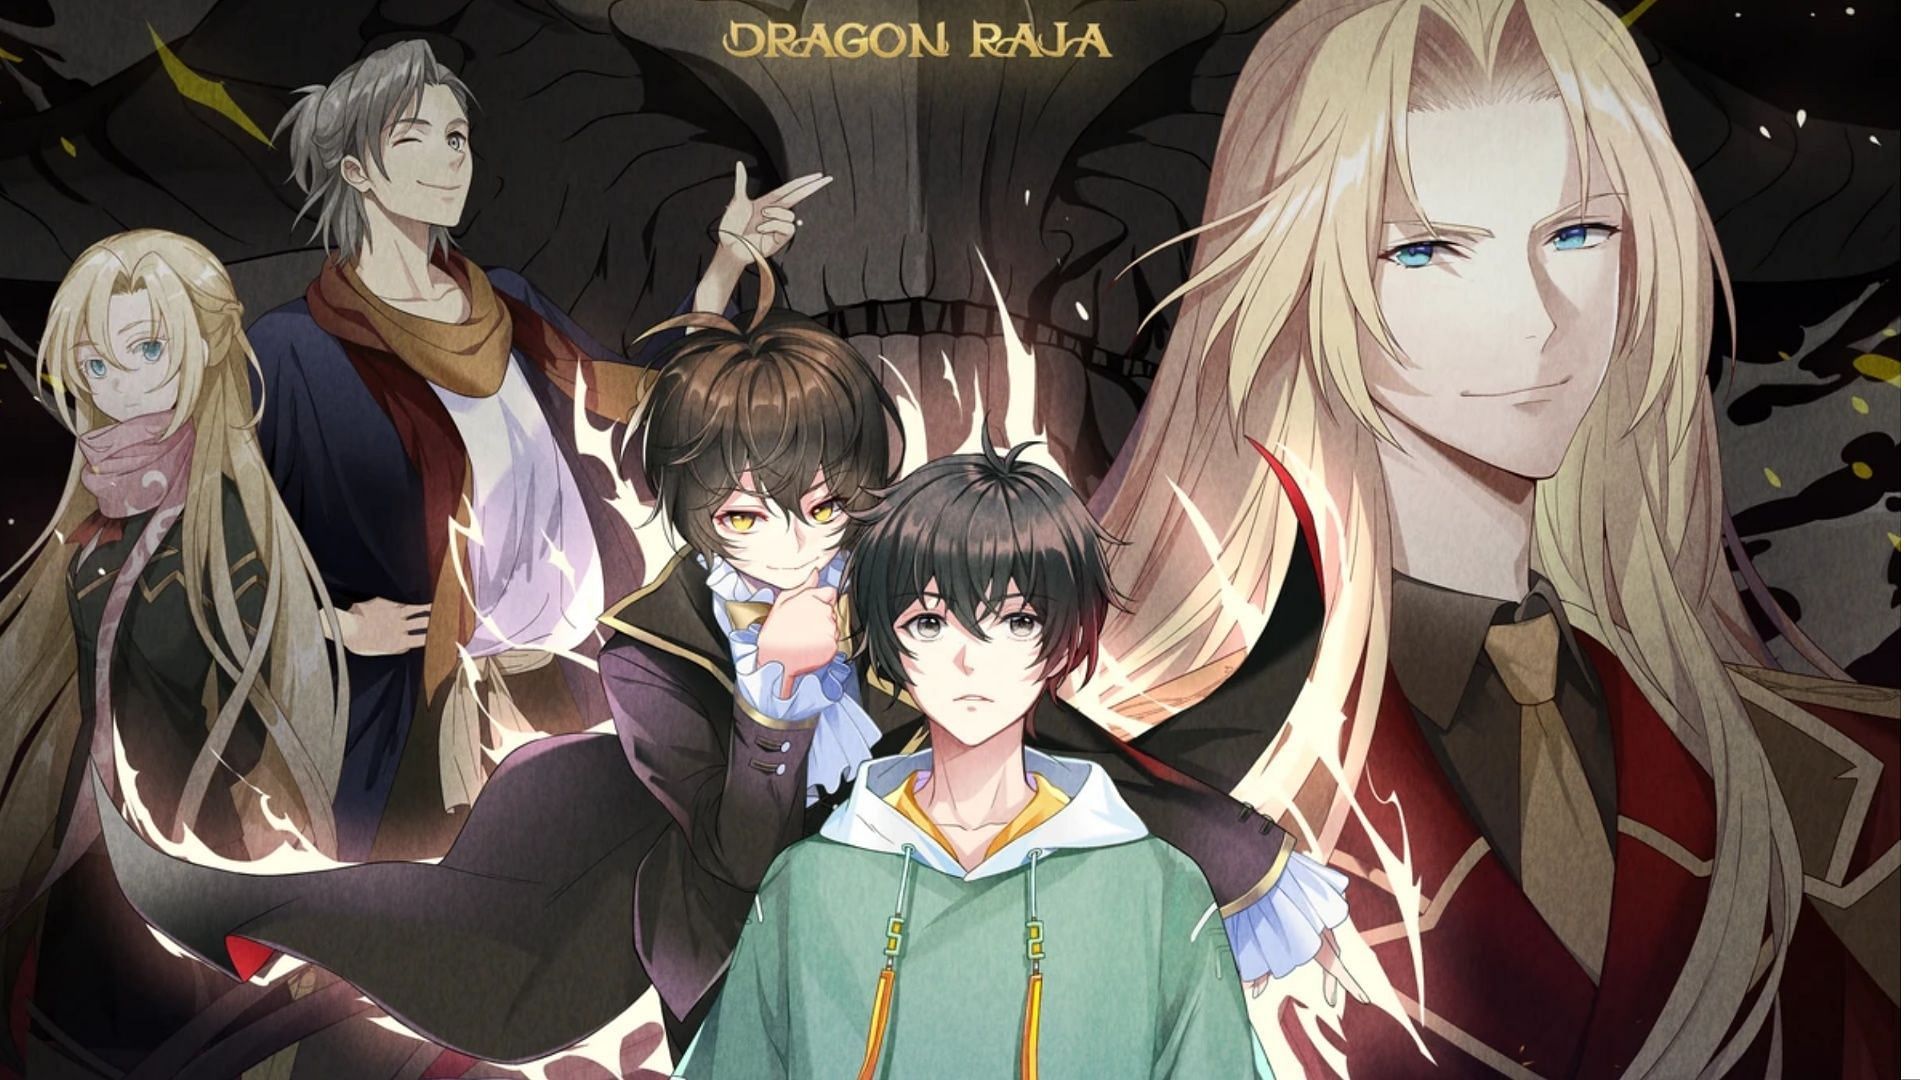 Dragon Raja Episódio 17 Data de lançamento: Mingfei firma um contrato! -  All Things Anime